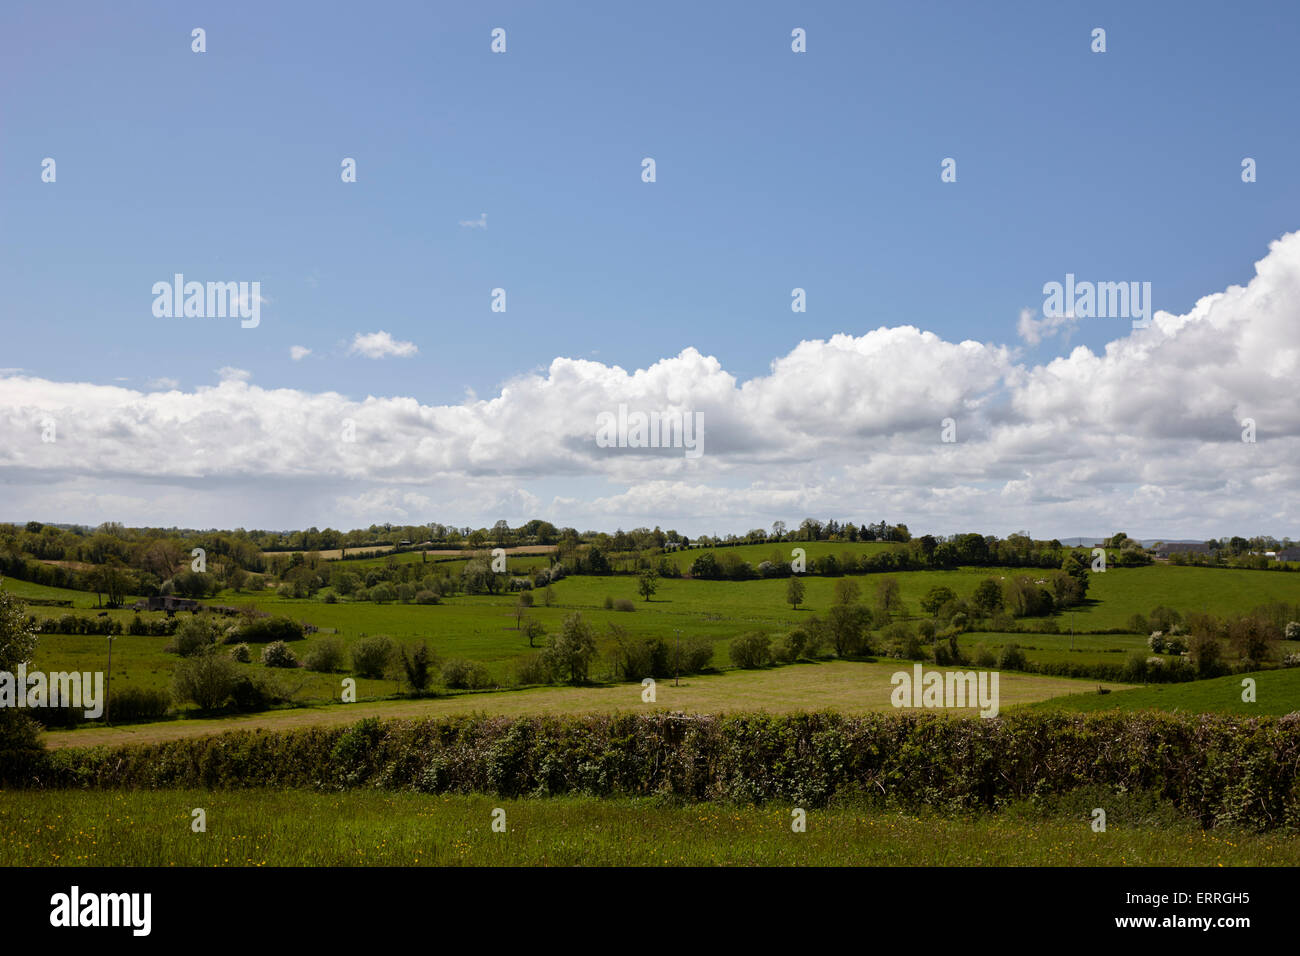 Verdes campos rurales bajo un cielo azul en la Irlanda rural tydavnet monaghan república de Irlanda Foto de stock